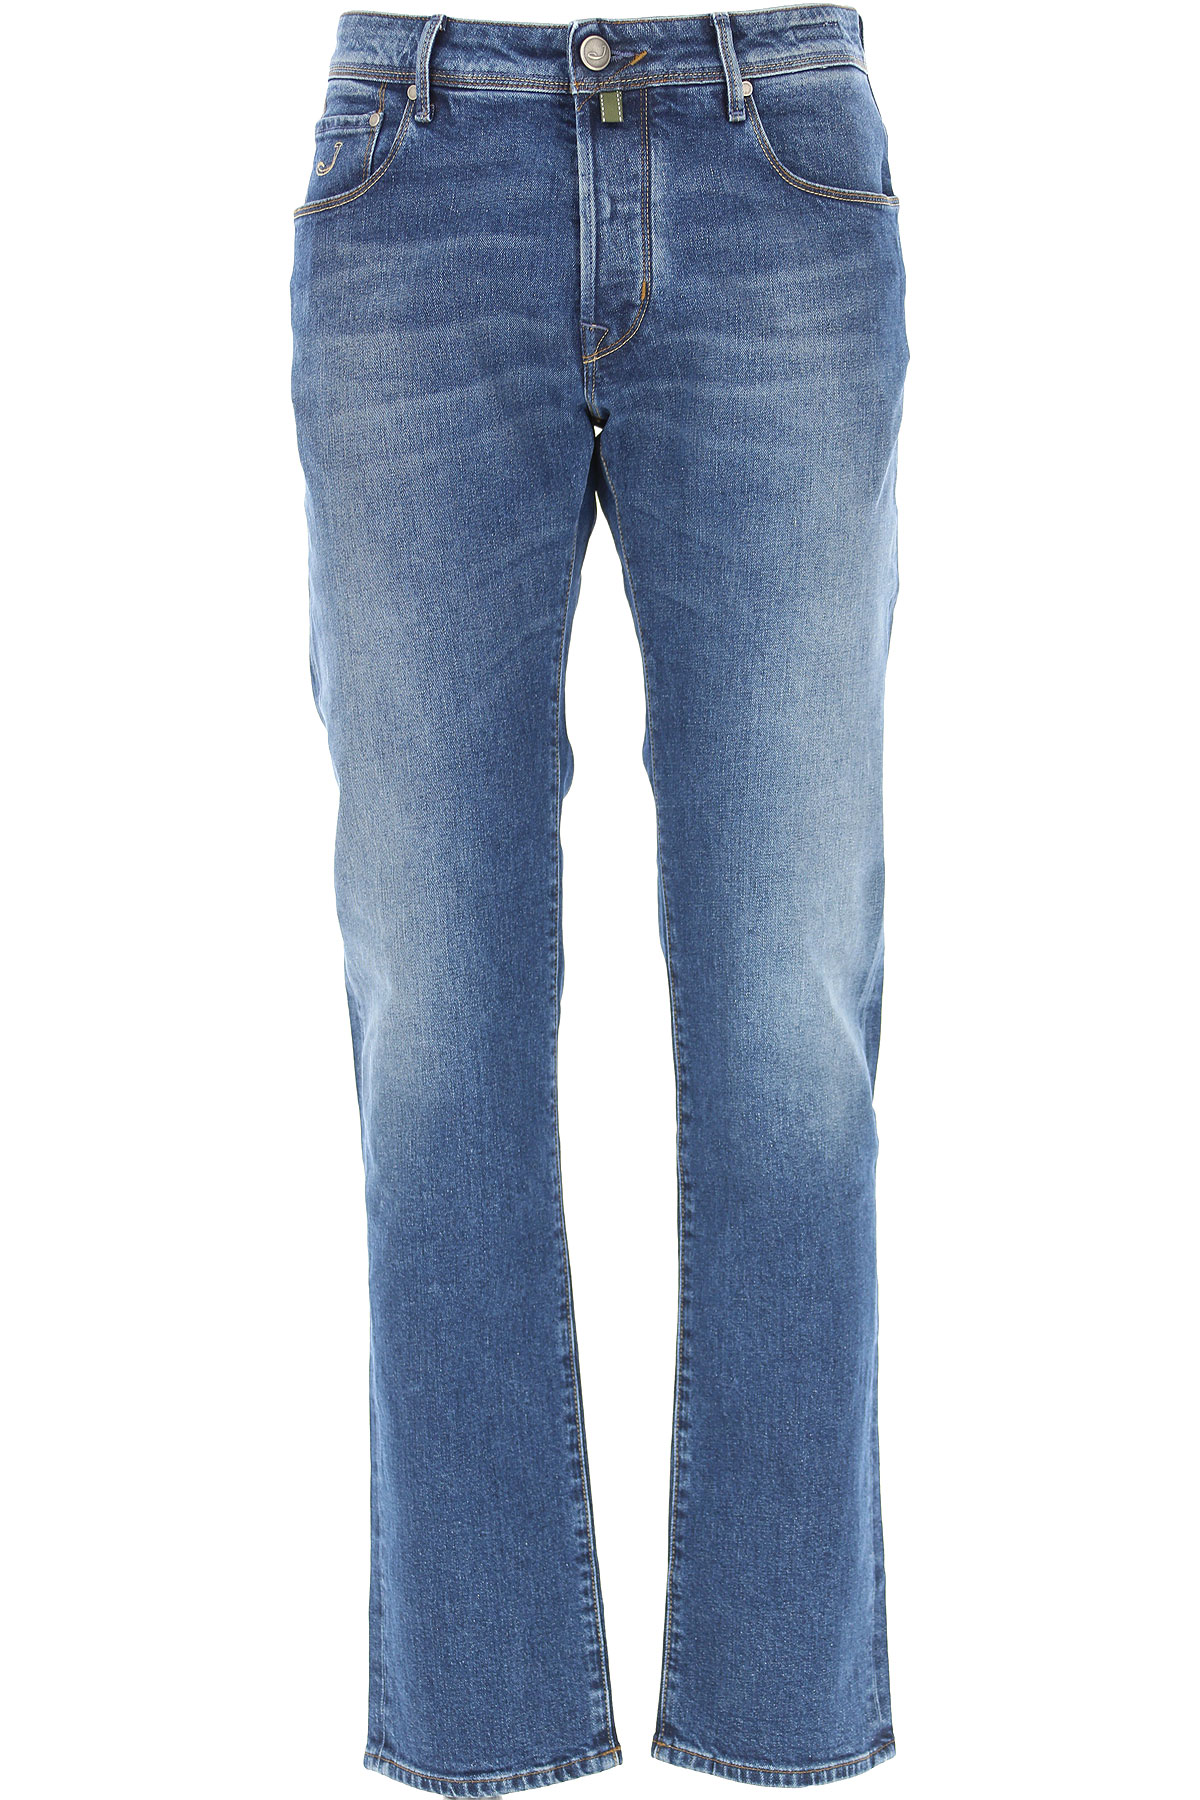 Jacob Cohen Jeans, Bluejeans, Denim Jeans für Herren Günstig im Sale, Medium denim blau, Baumwolle, 2017, 46 48 49 50 51 52 54